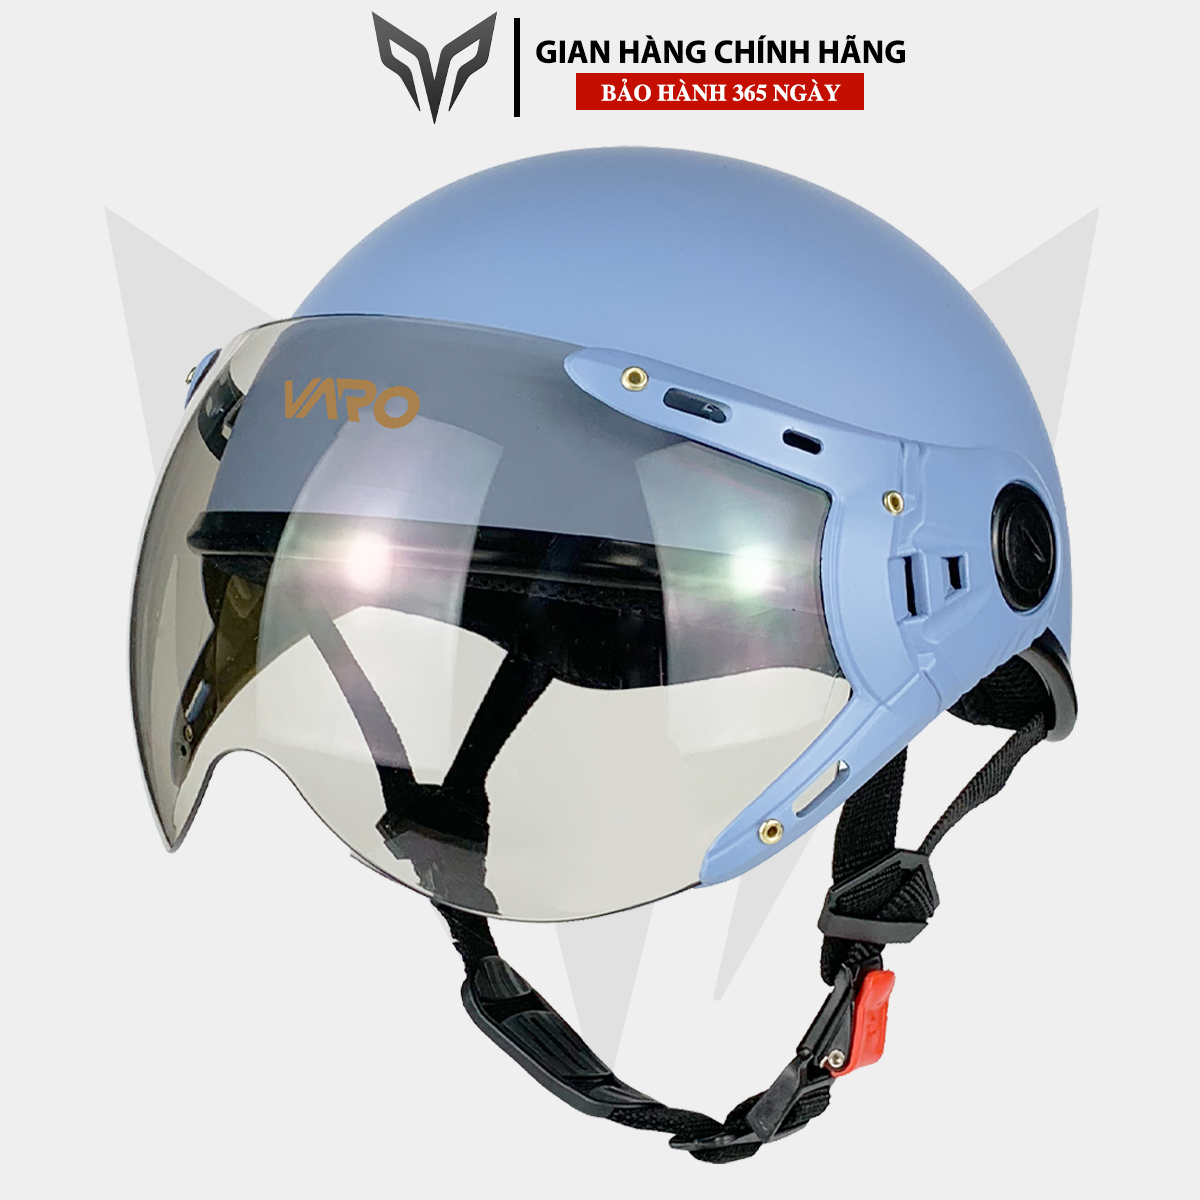 Mũ bảo hiểm nửa đầu kính càng VARO màu Xám xanh - Có kính chống UV